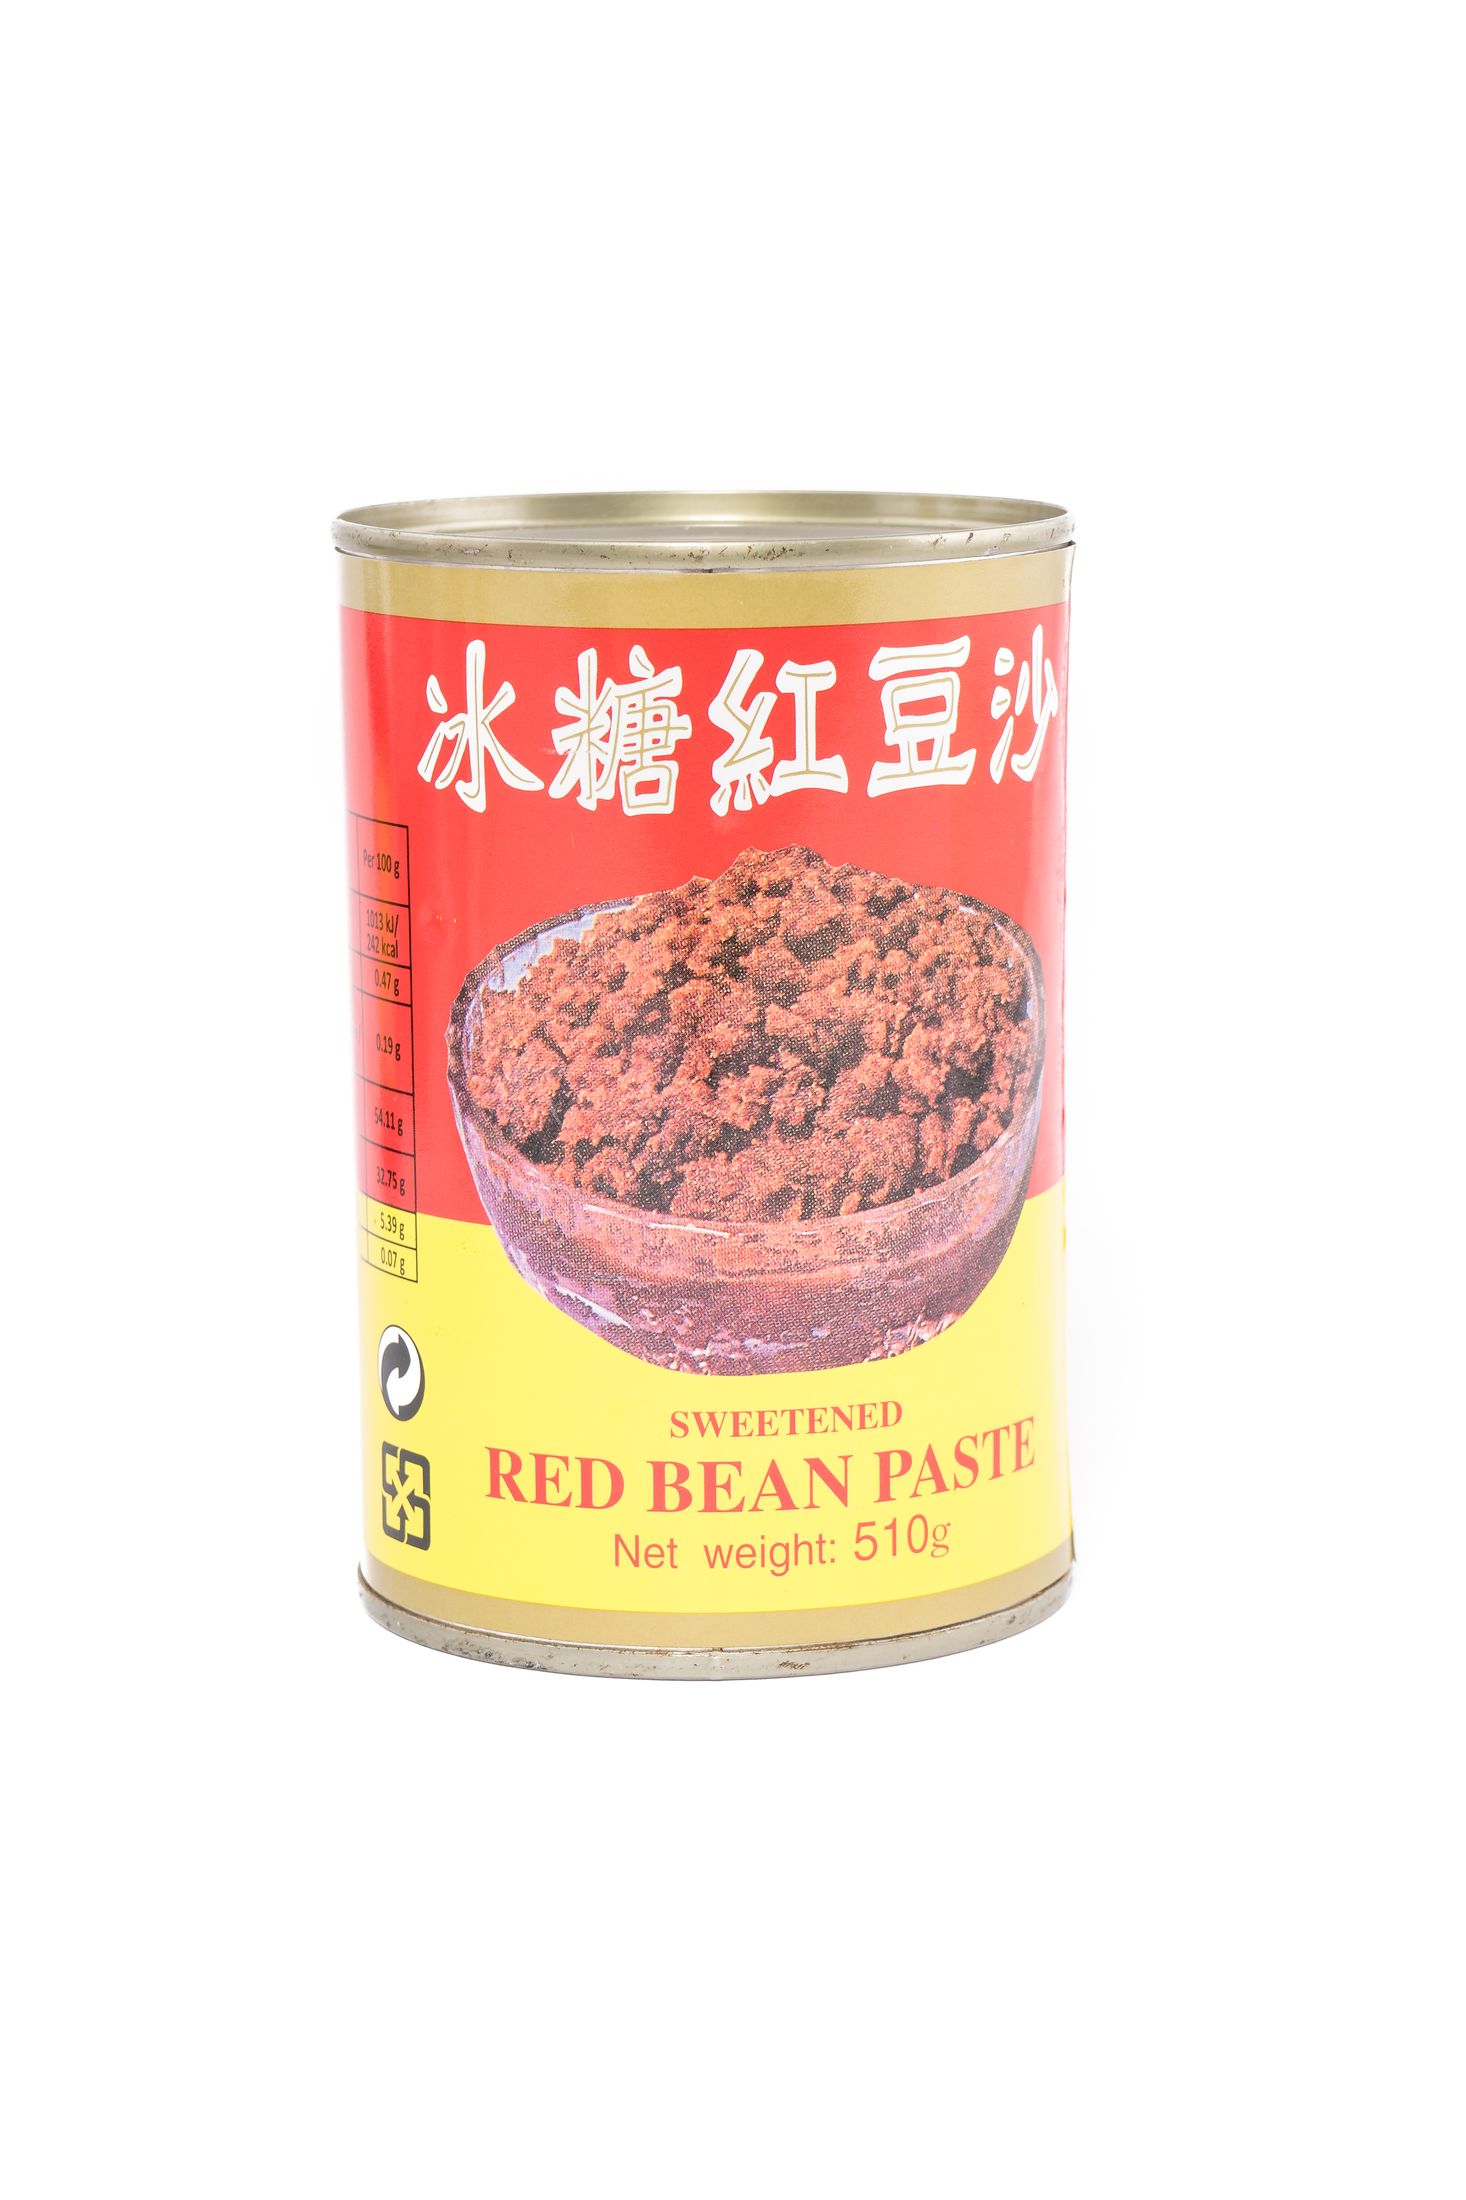 Wu Chung Rode bonen pasta met toegevoegde suiker